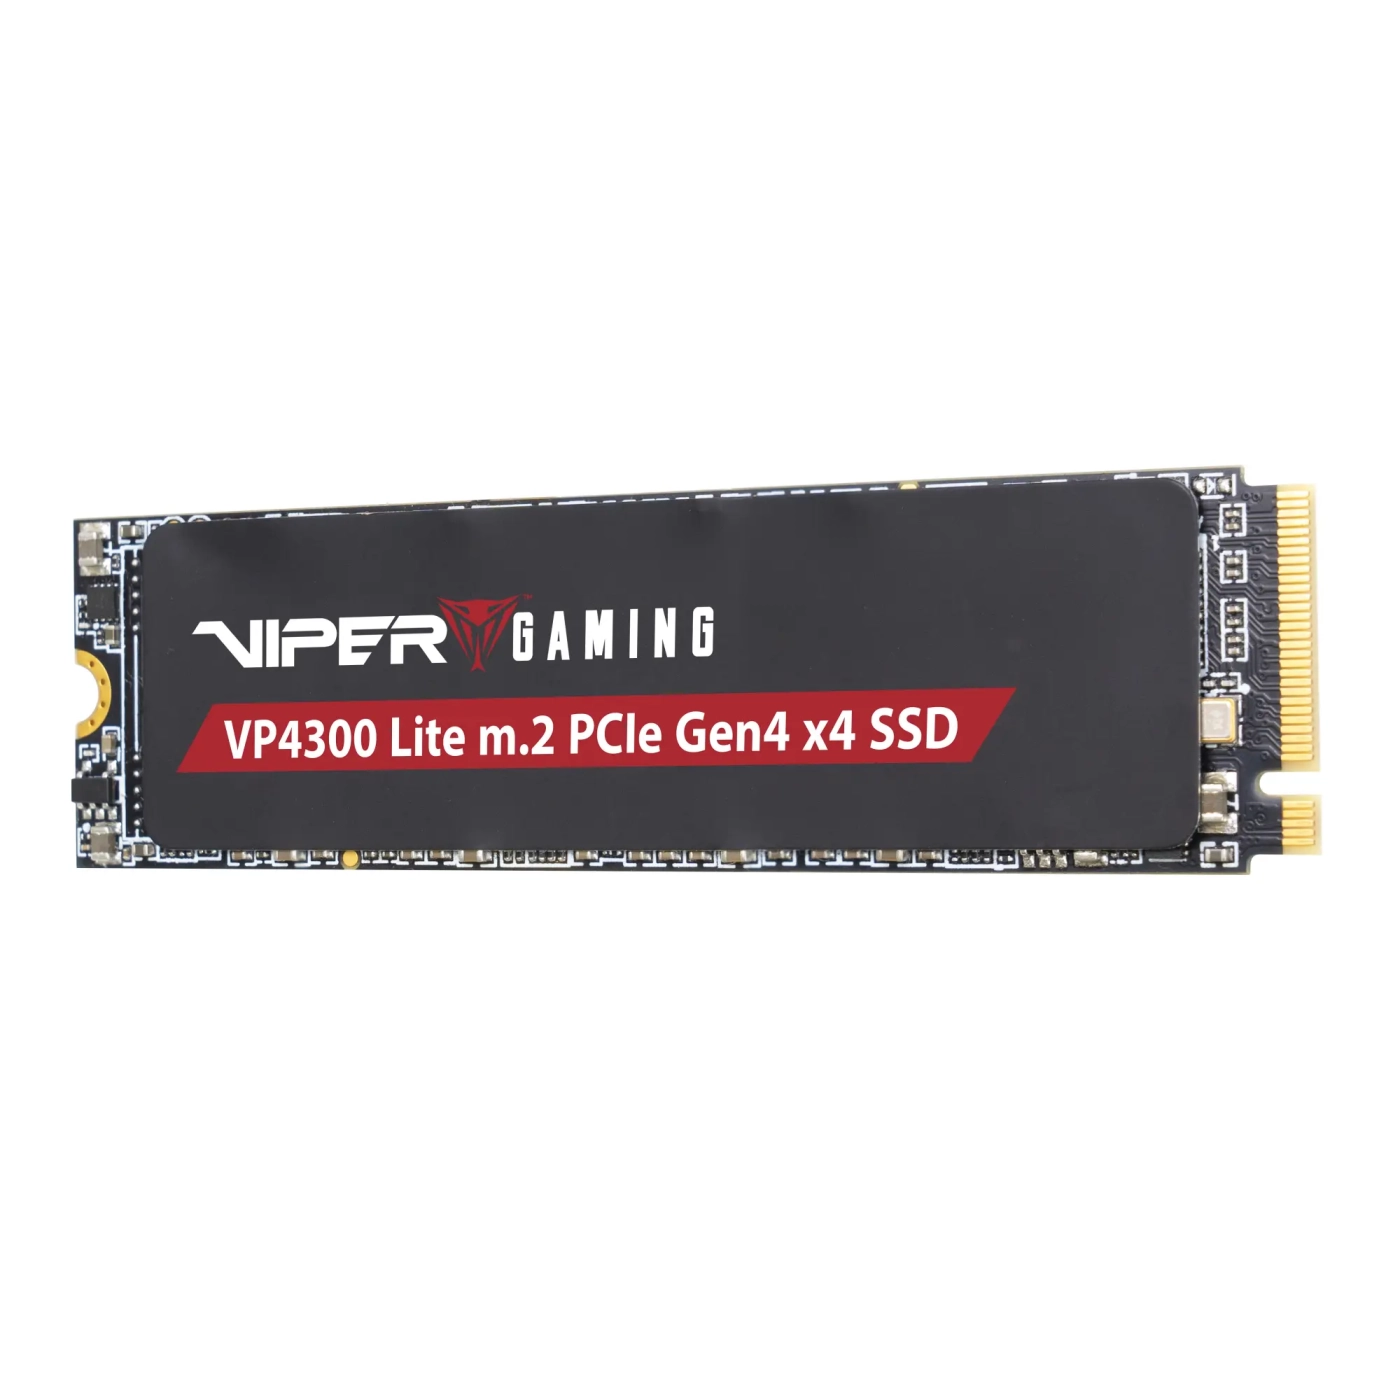 Купить SSD Patriot Viper Gaming VP4300 Lite 1TB M.2 - фото 2